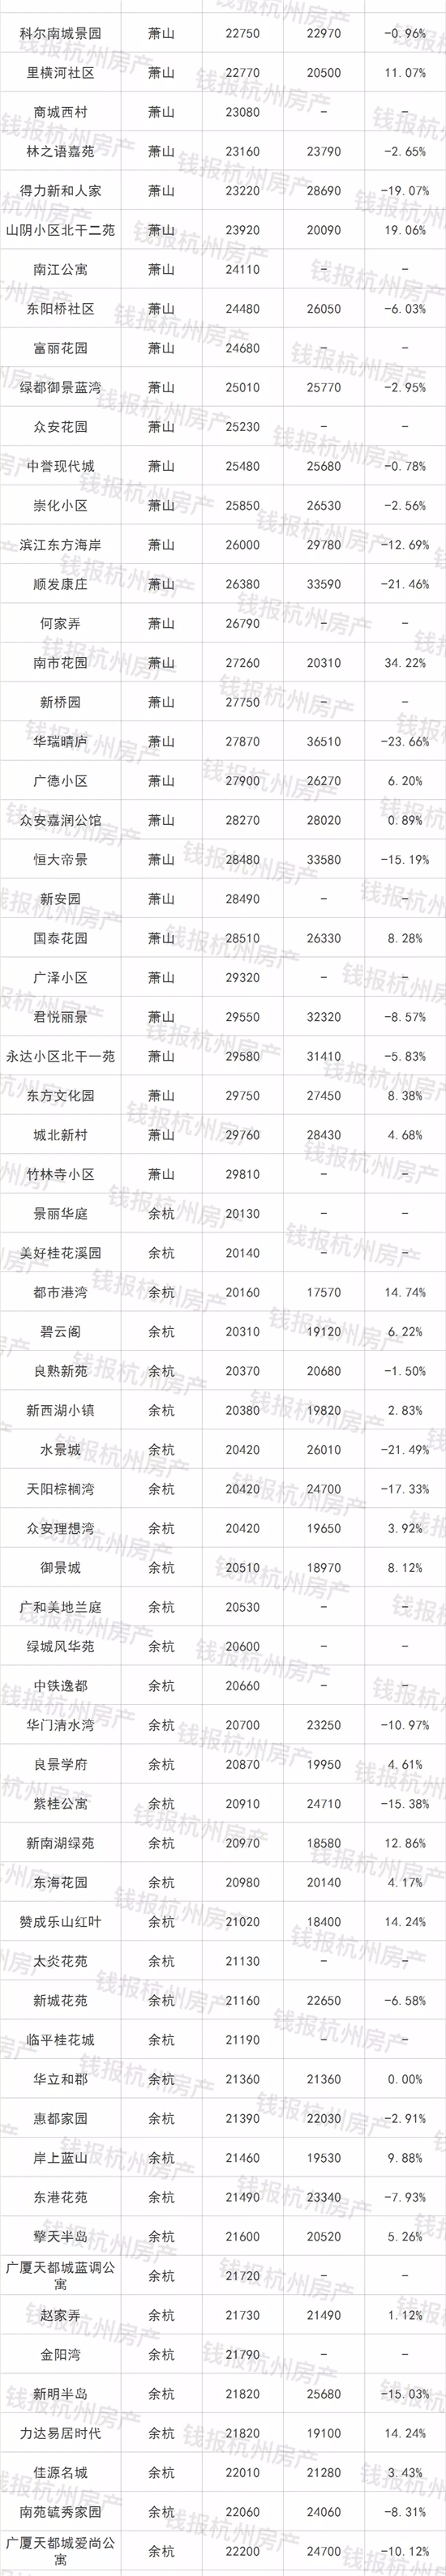 杭州最新最全二手房成交榜 超过一半的二手房跌